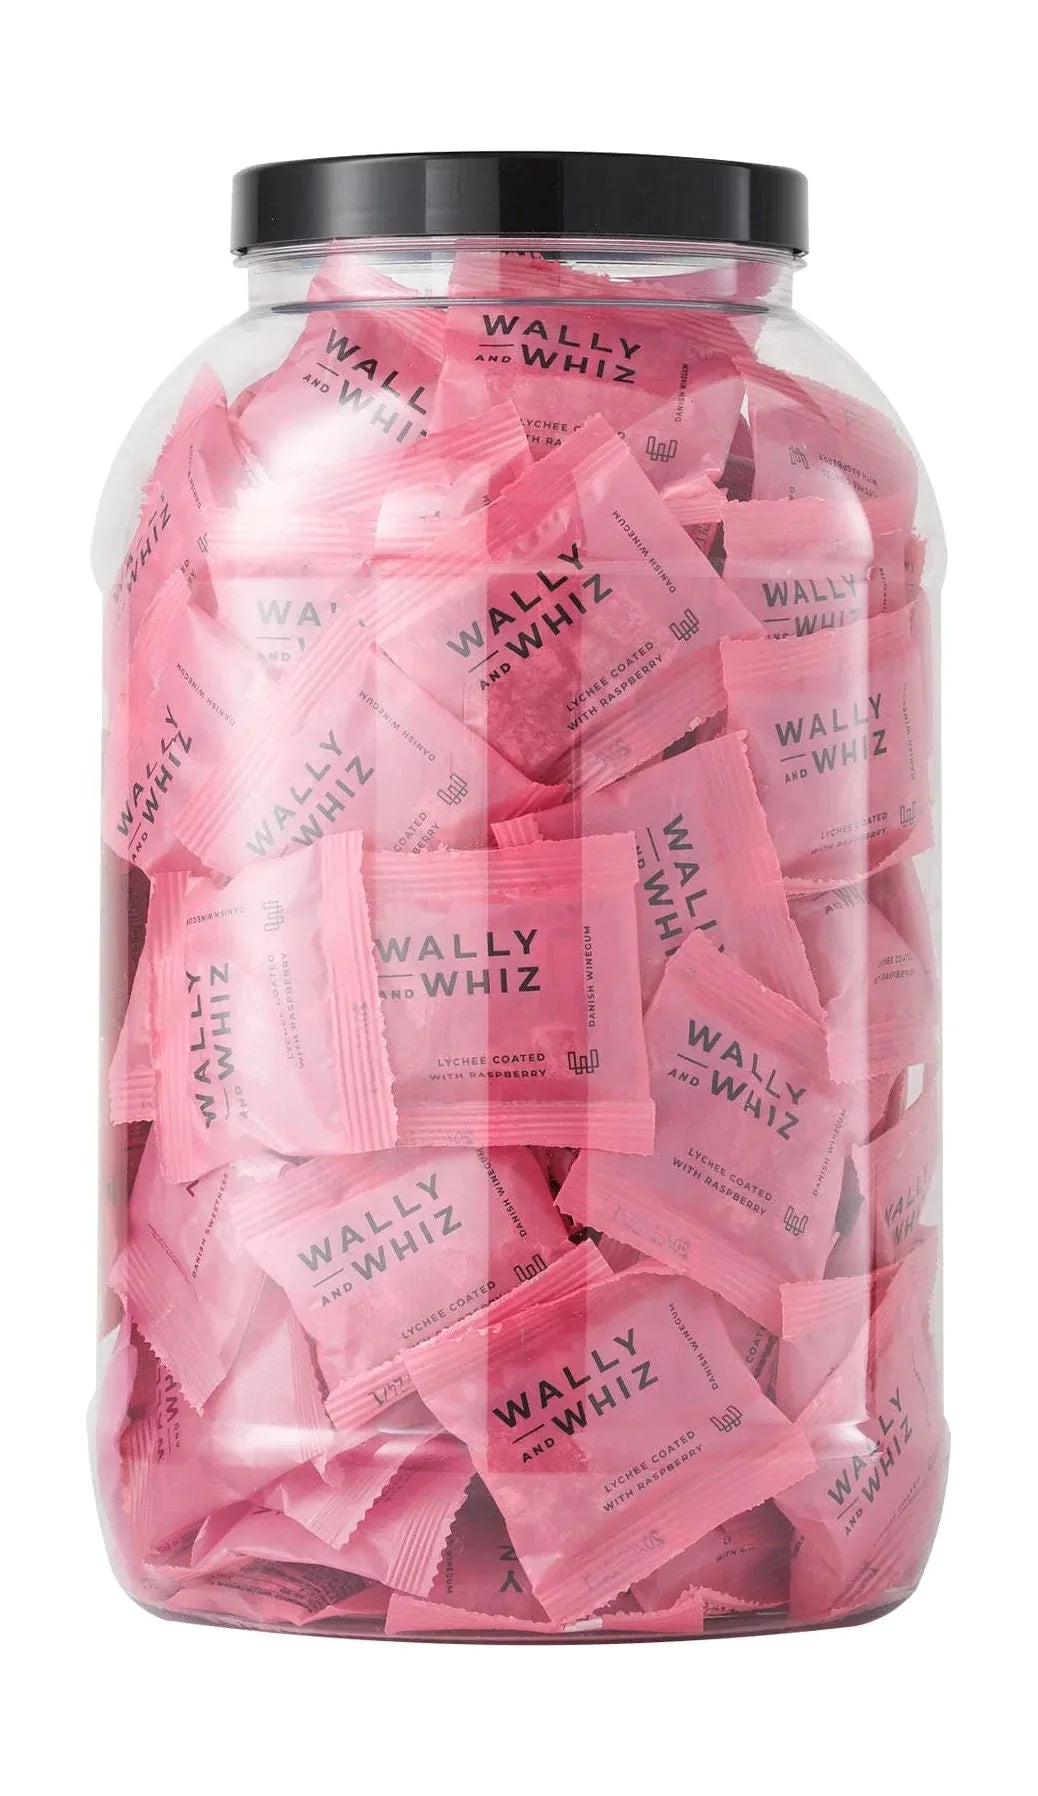 Wally og Whiz Wine Gum Jar med 125 flytpakker, litchi med bringebær